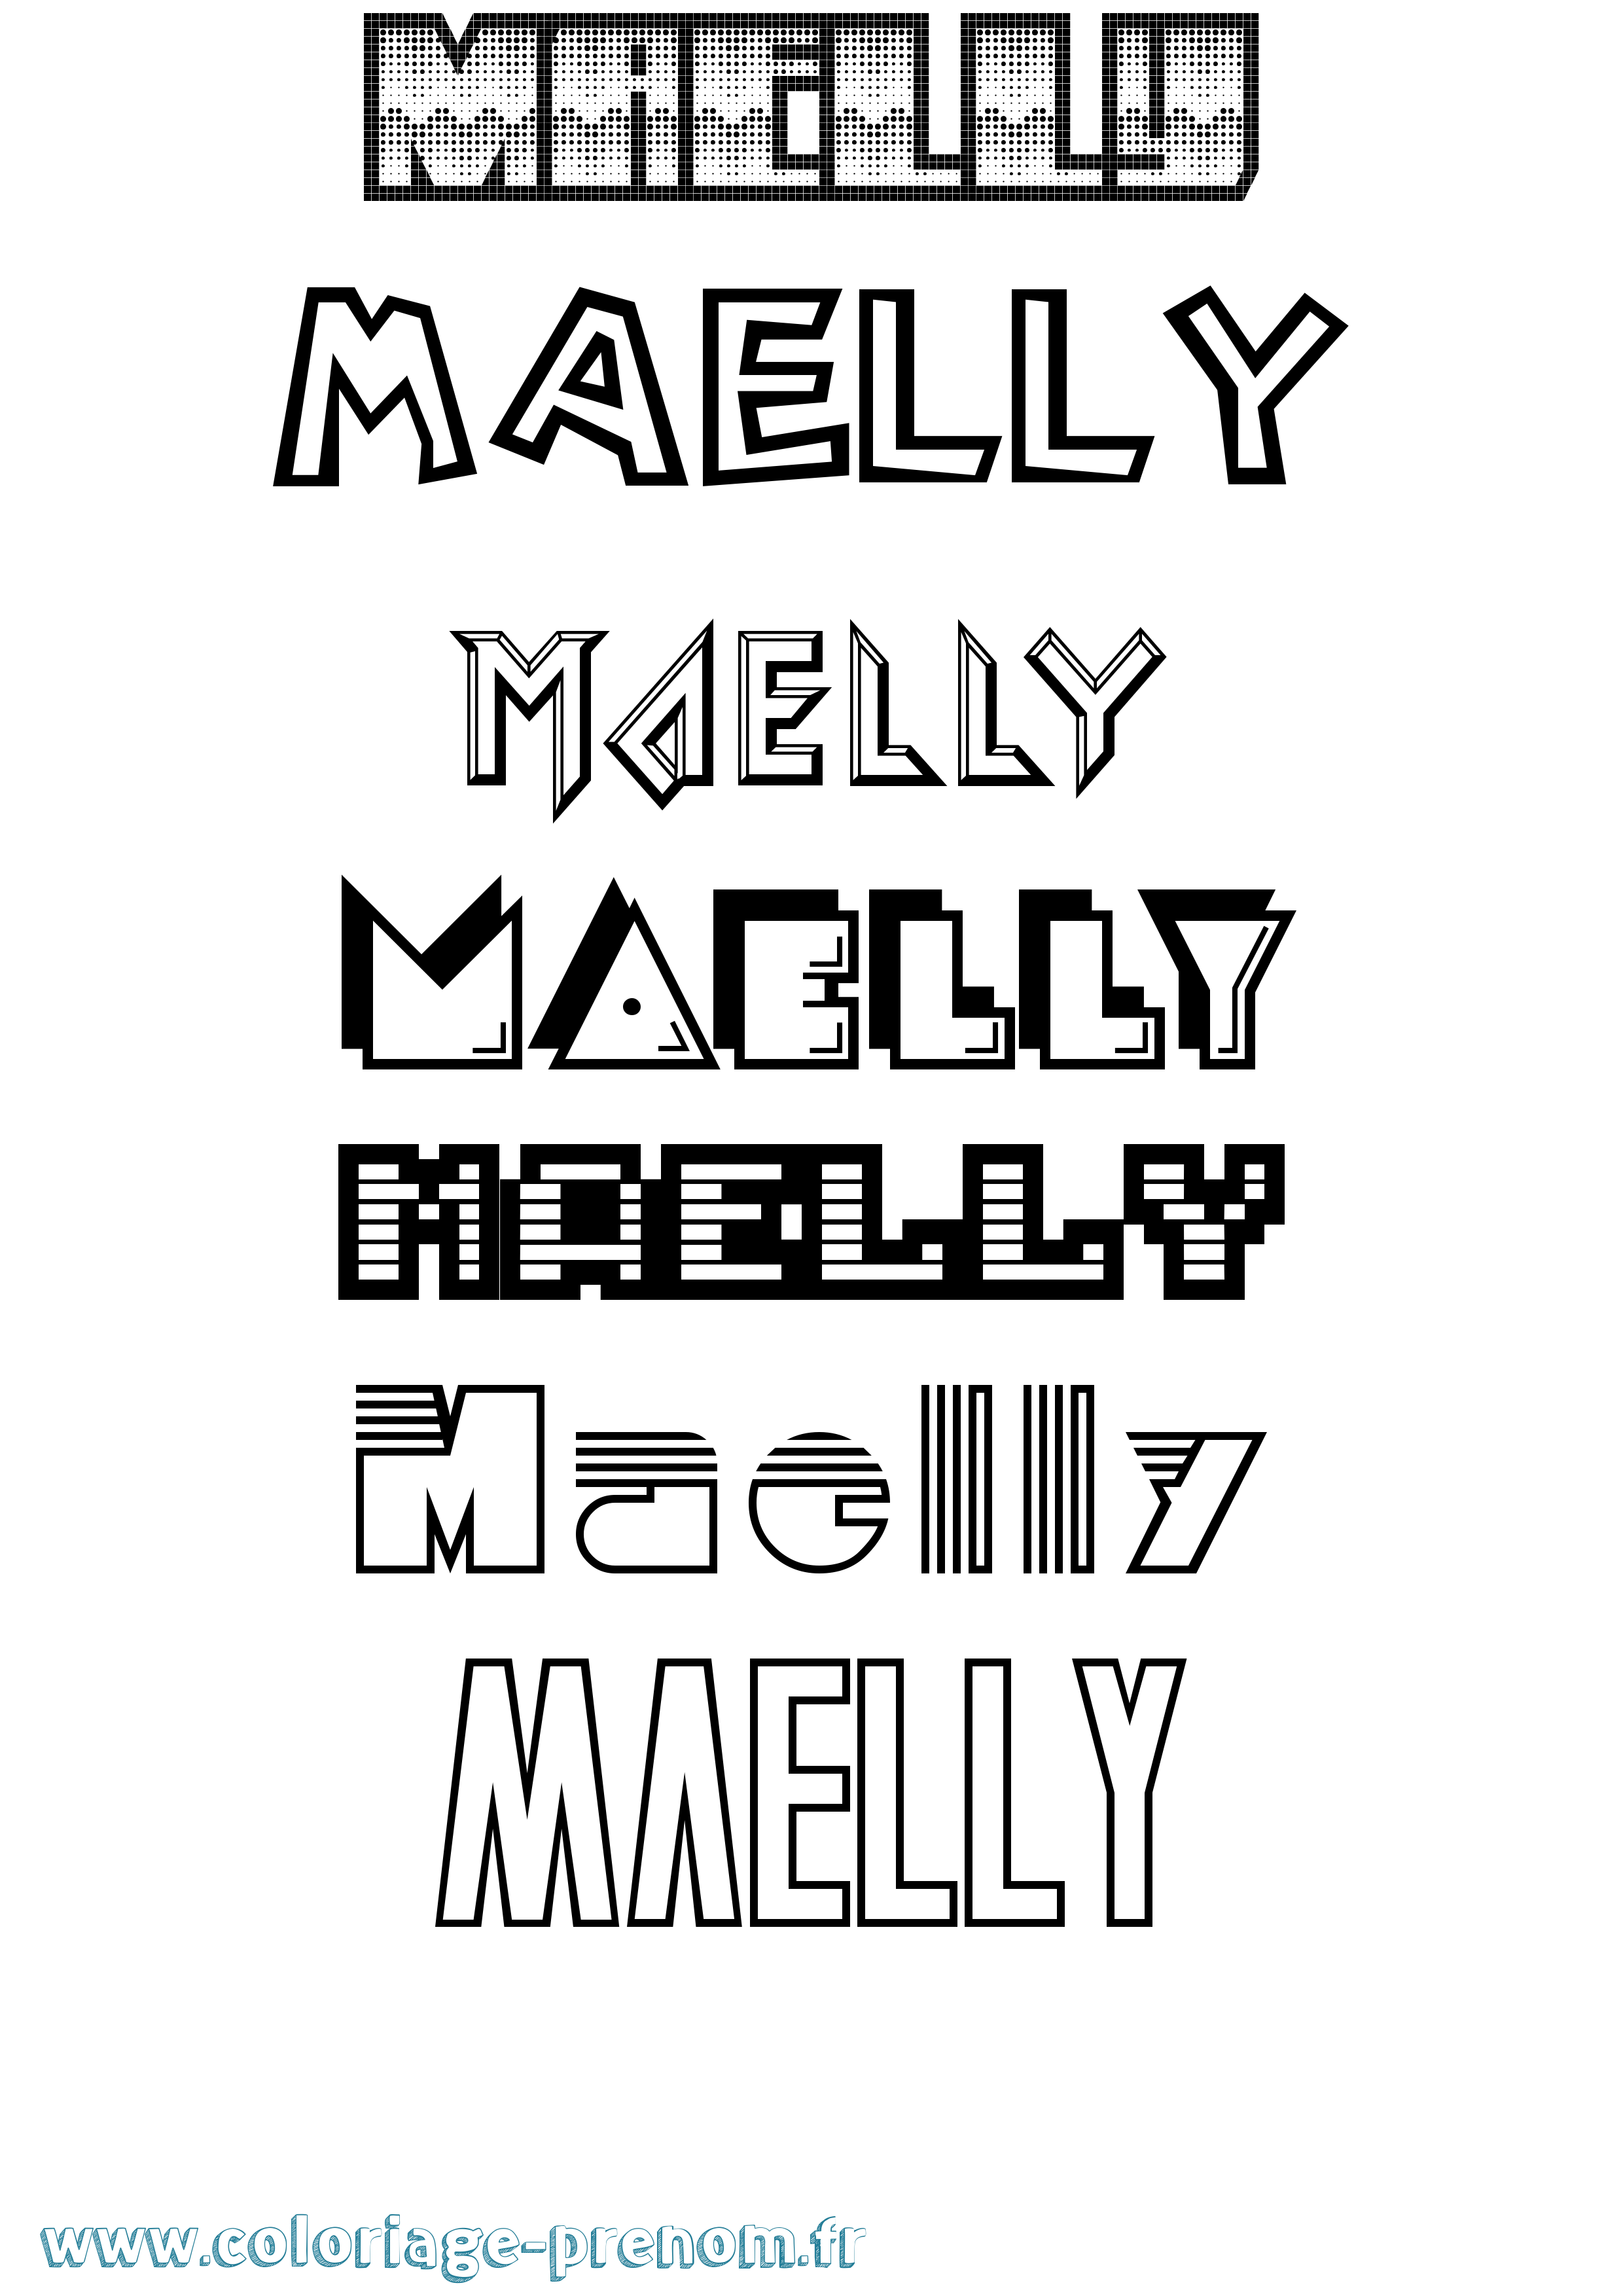 Coloriage prénom Maelly Jeux Vidéos